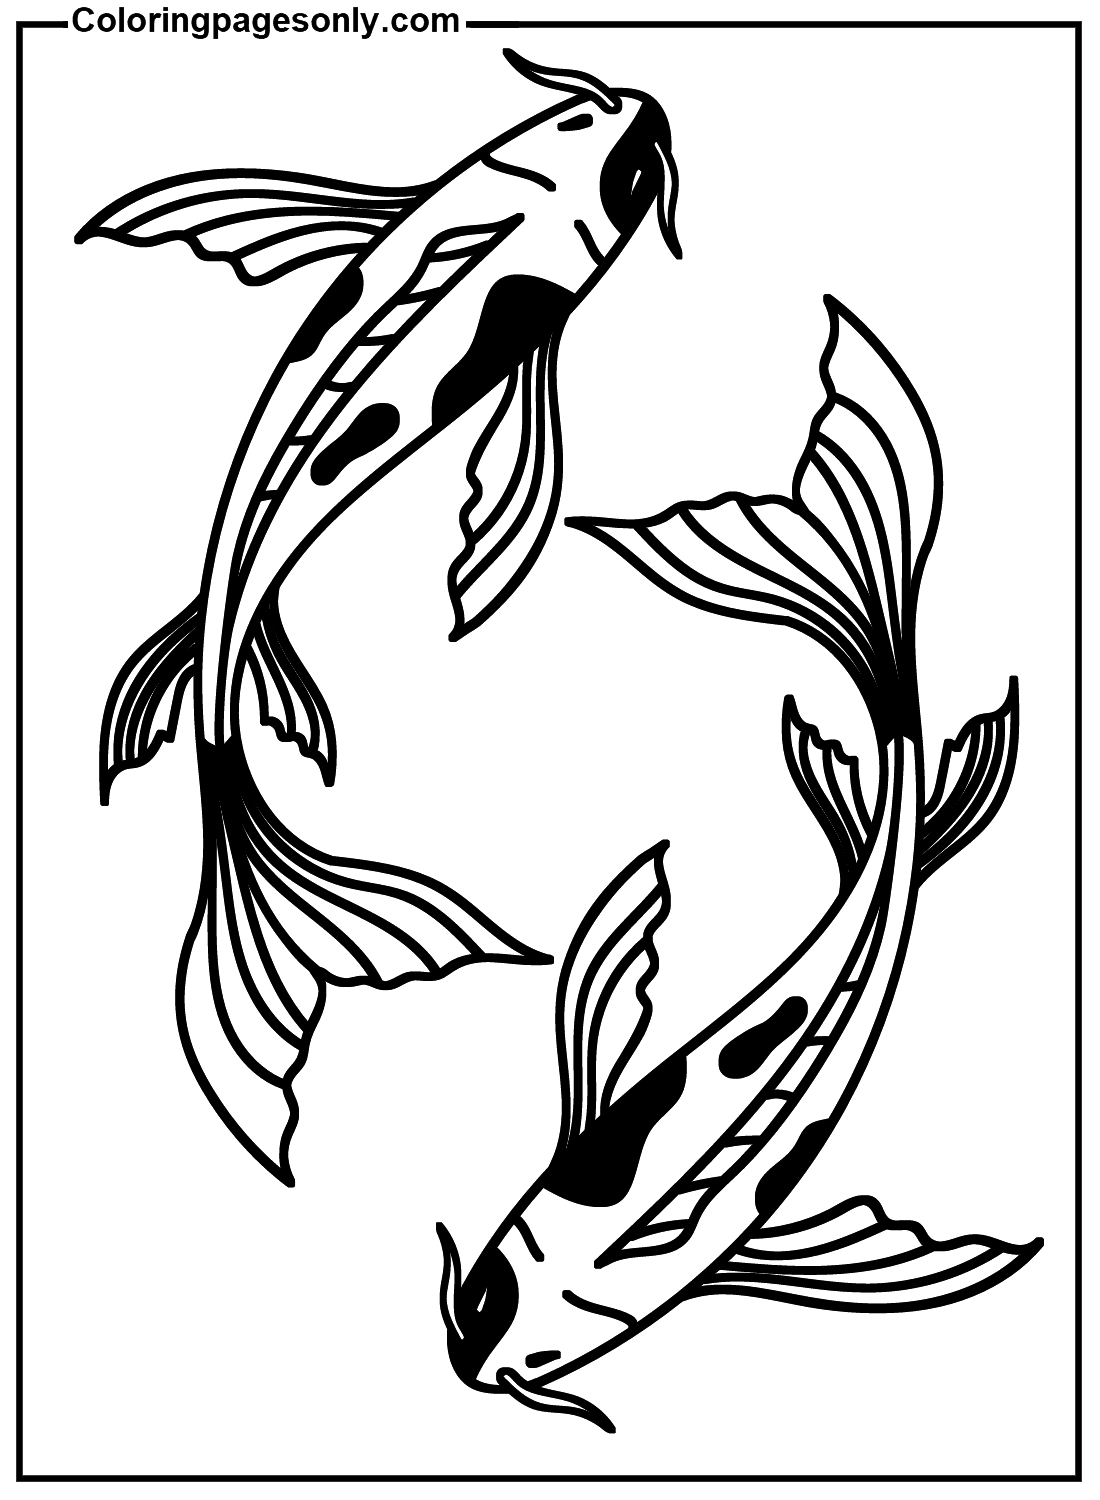 Peixe Koi para impressão grátis da Koi Fish